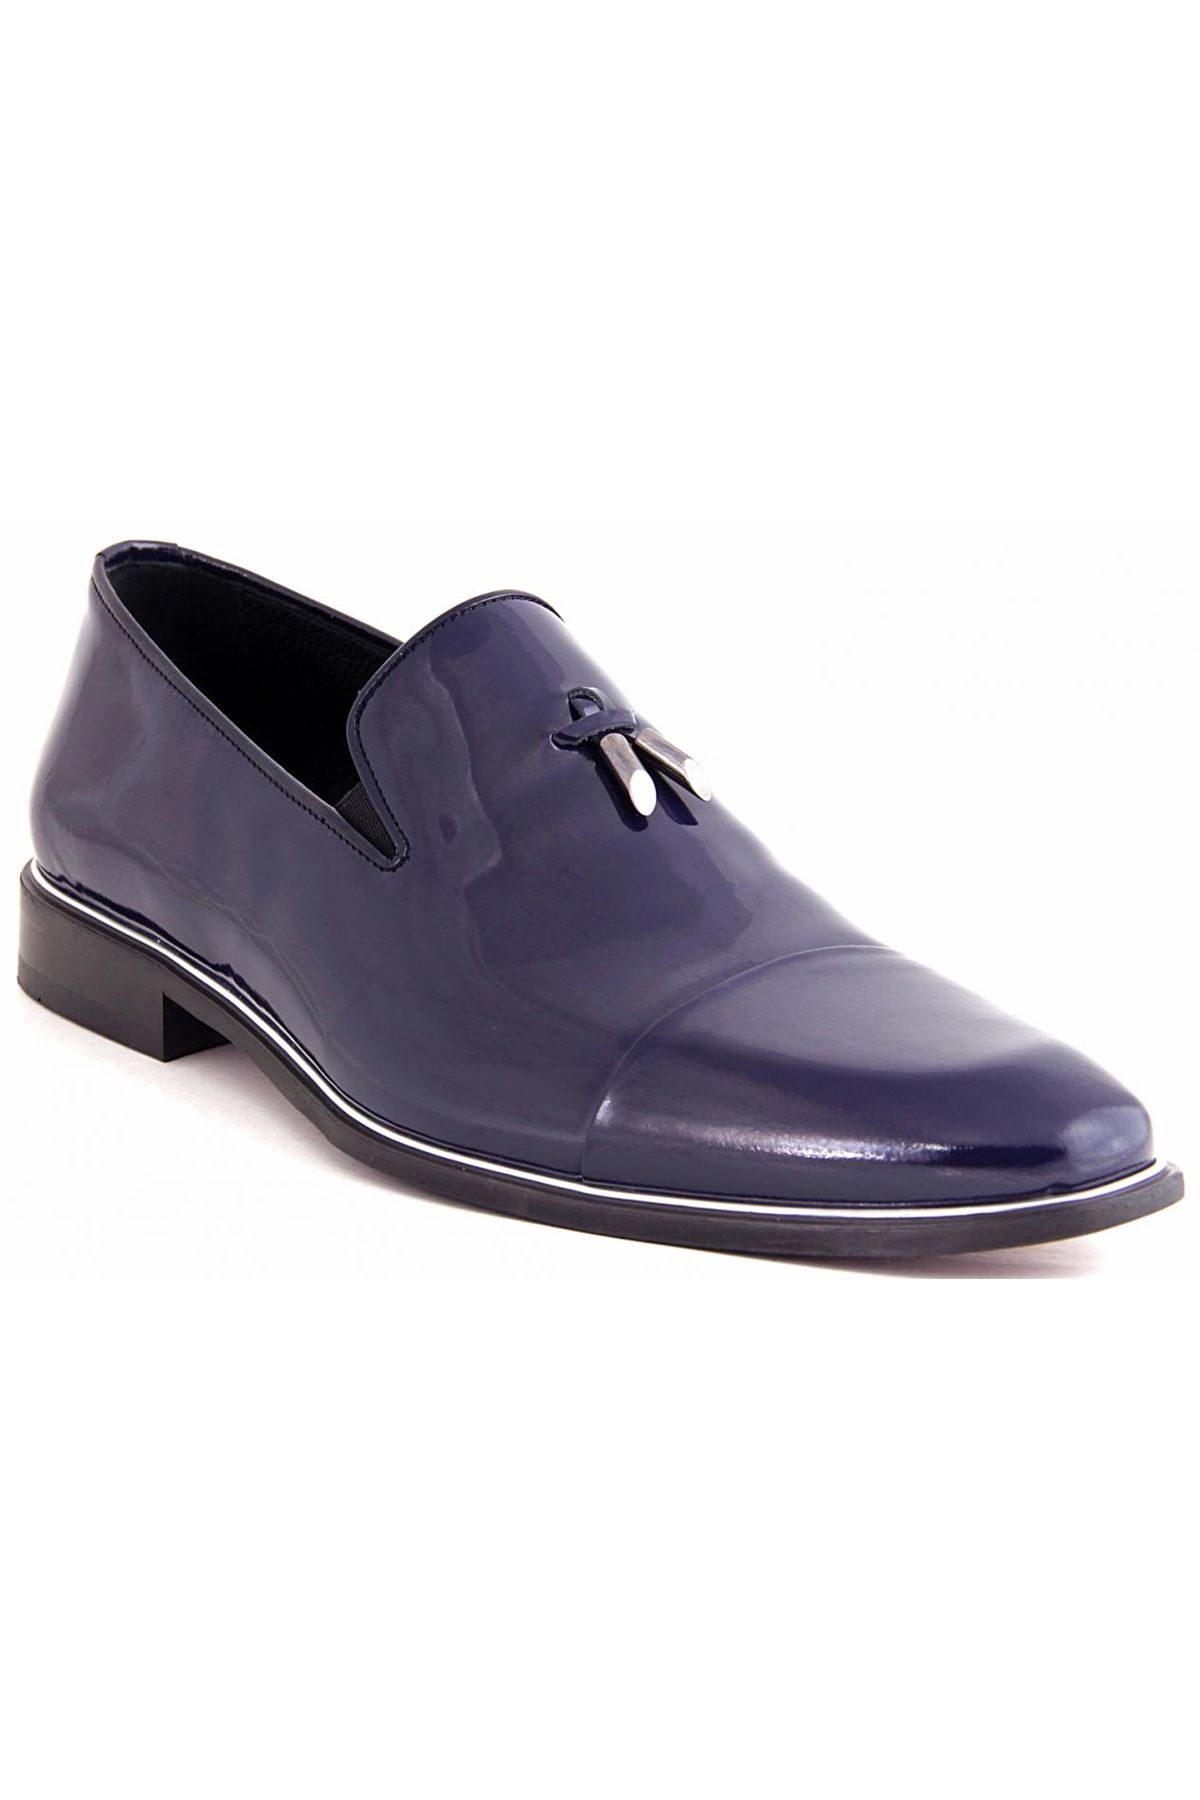 Libero 2385 Klasik Erkek Ayakkabı - Lacivert Rugan